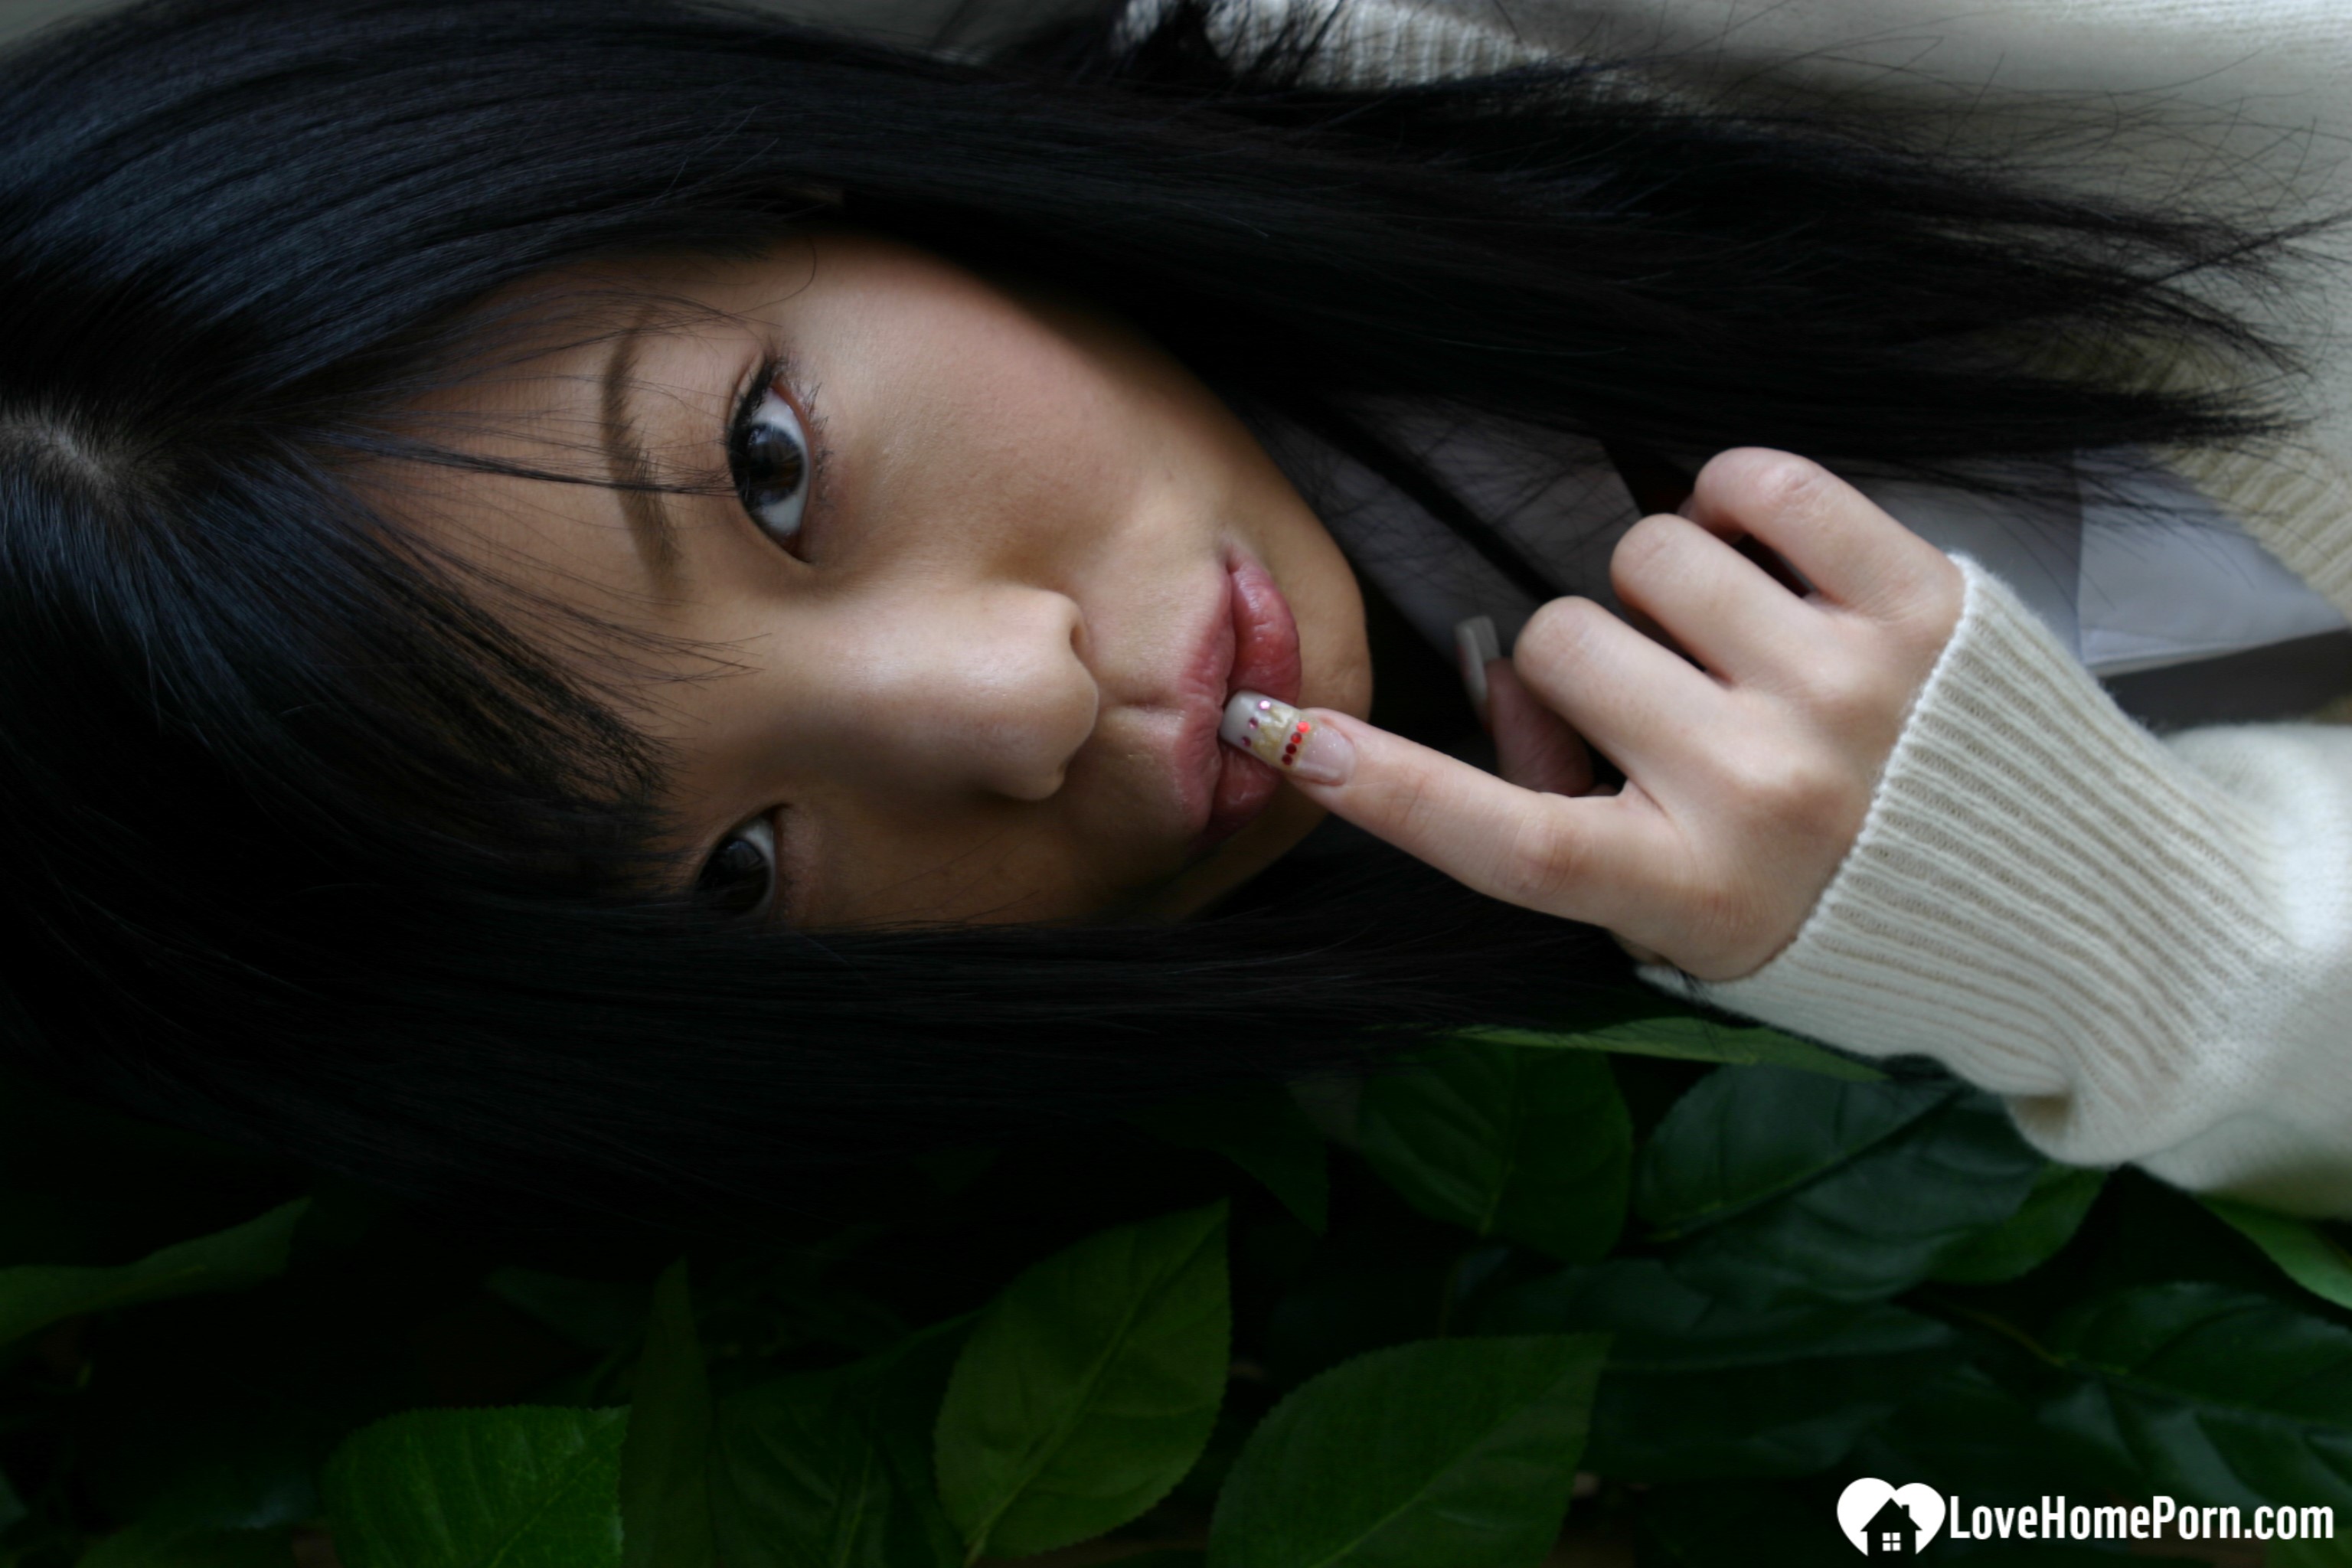 Asian schoolgirl looks for some online exposure